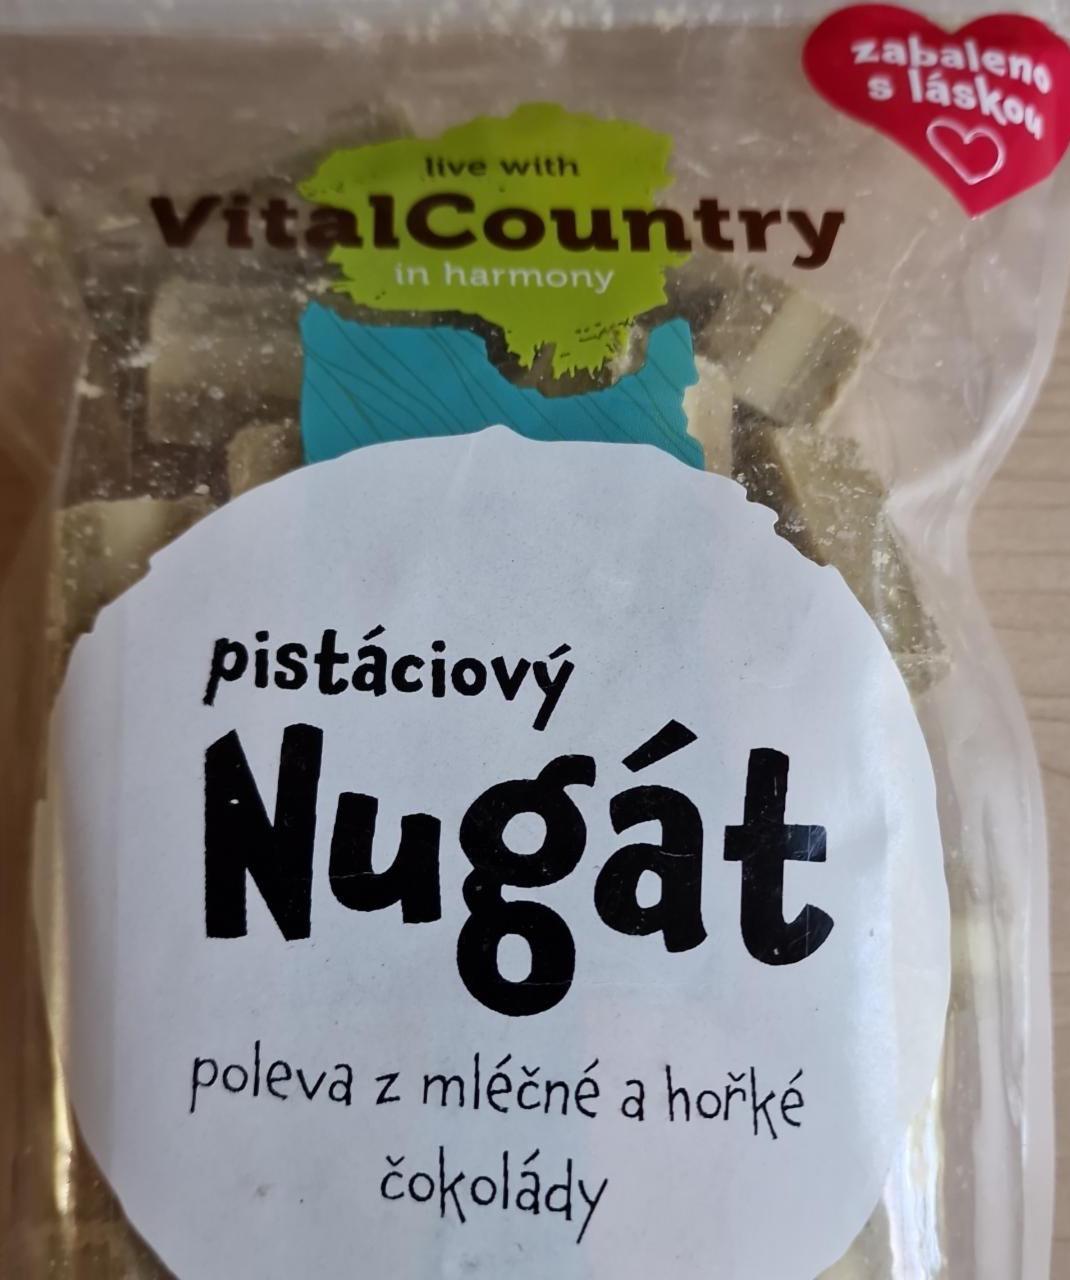 Fotografie - pistáciový Nugát - poleva z mléčné a hořké čokolády VitalCountry